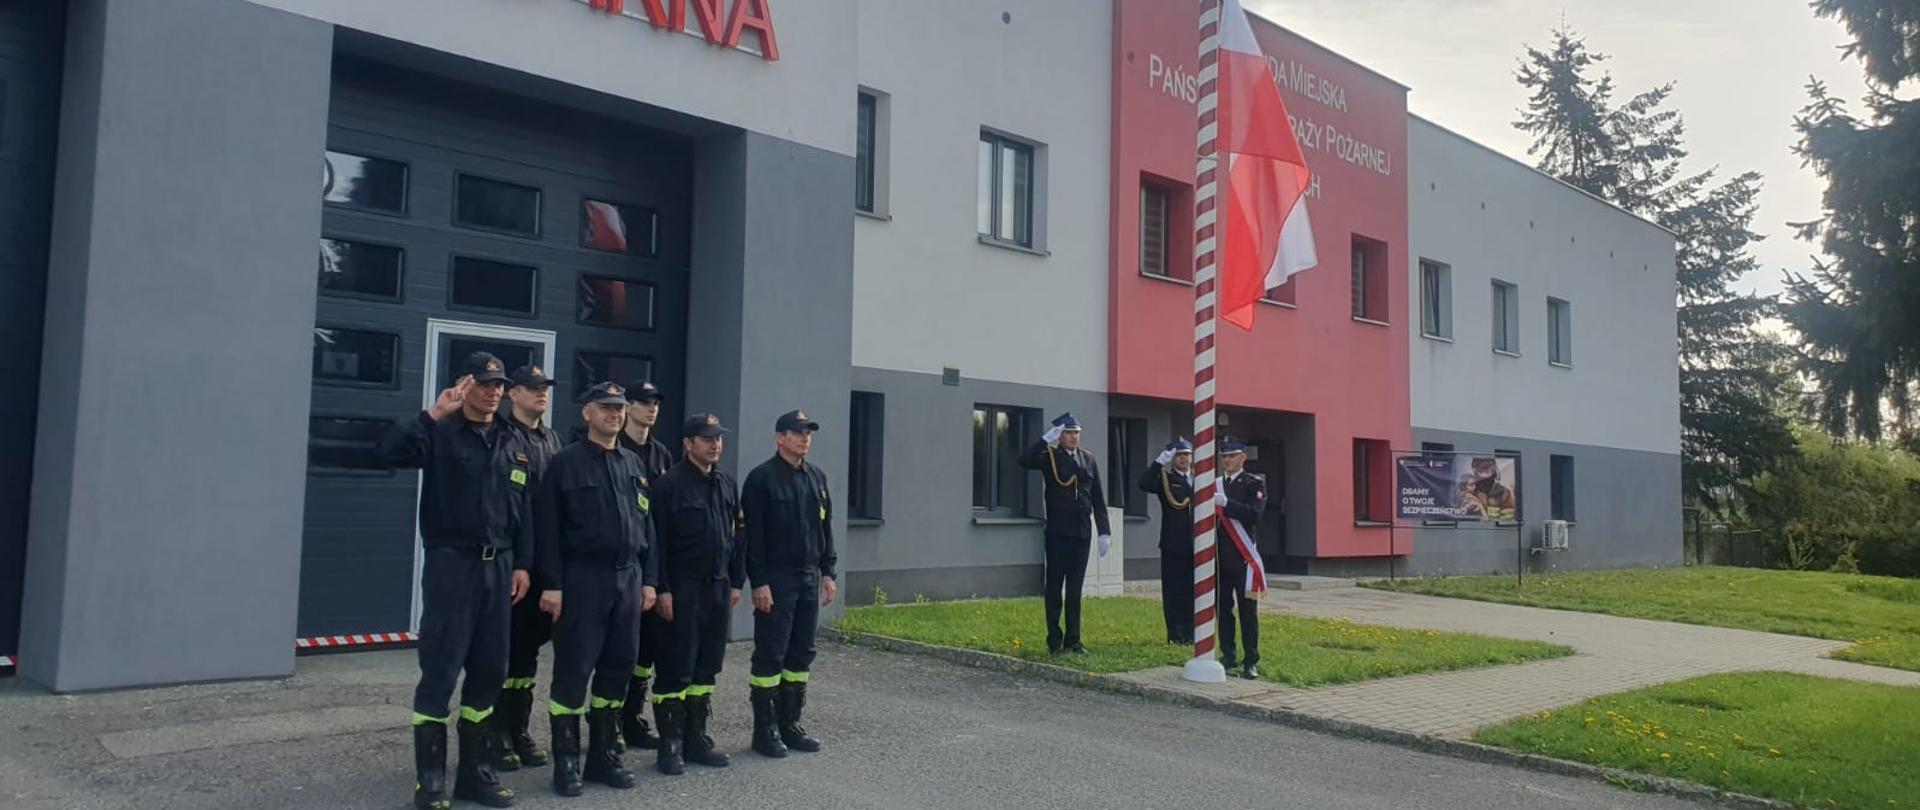 Strażacy stojący w dwuszeregu na tle budynku Komendy jeden z nich salutuje, trzech strażaków stoi przy maszcie flagowym, jeden mocuje flagę, dwaj salutują.